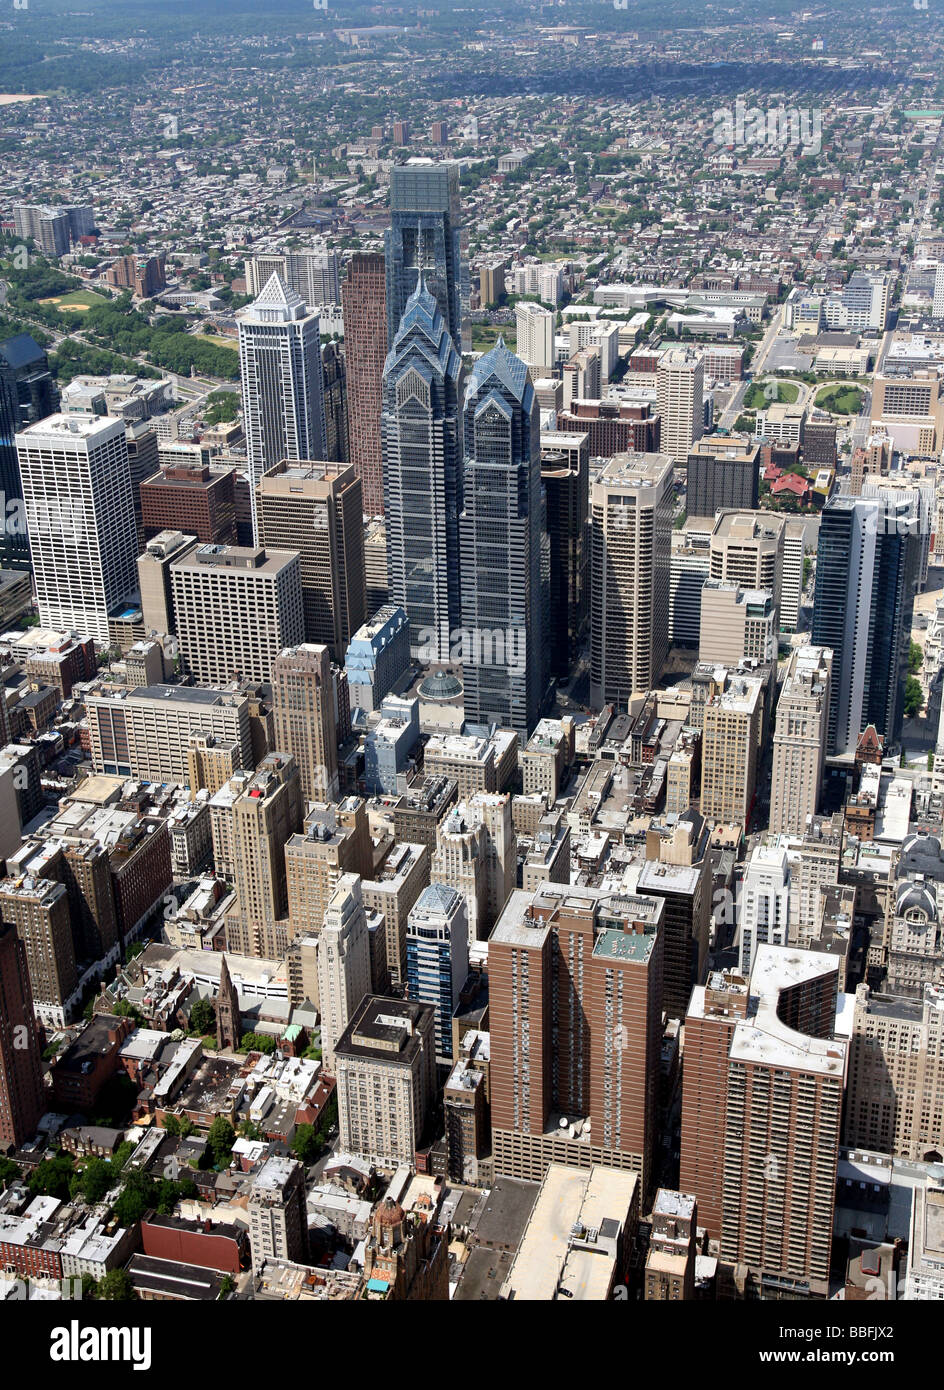 Vista aérea de la ciudad de Philadelphia, Pennsylvania, Estados Unidos. Foto de stock